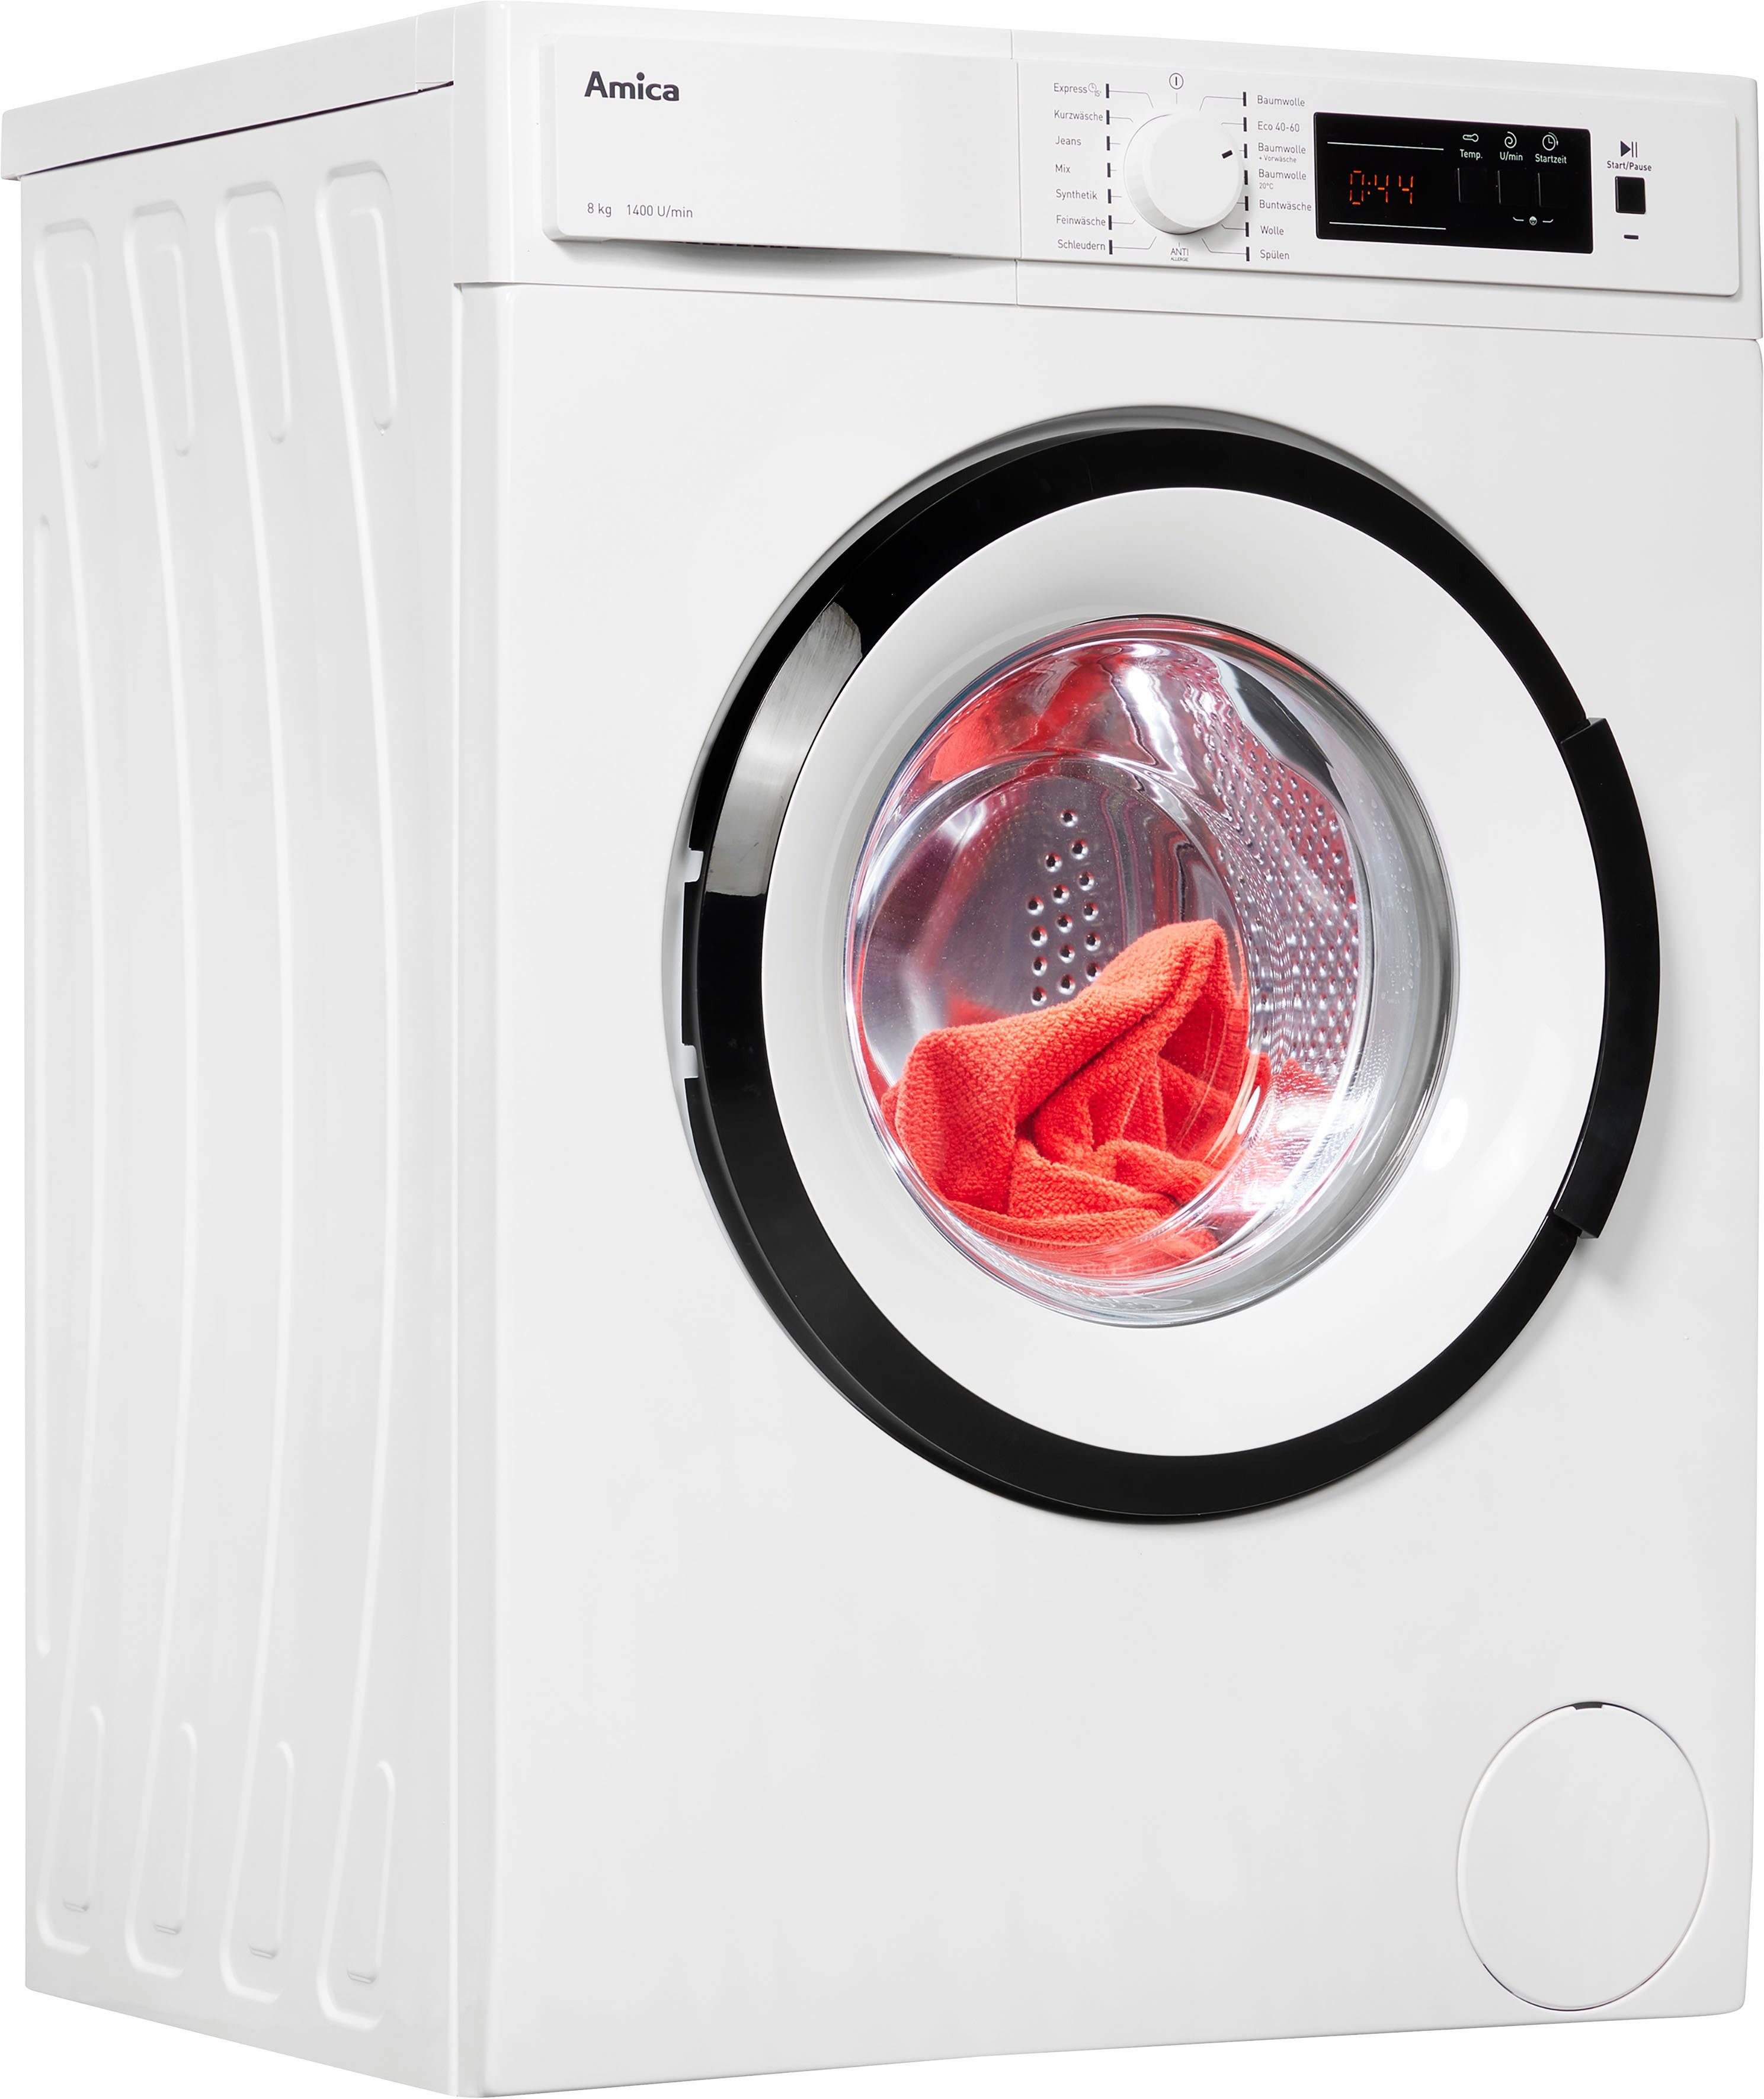 Amica Waschmaschine WA 484 072, Überlaufschutz kg, U/min, Unwuchtsystem, 1400 8 Automatisches